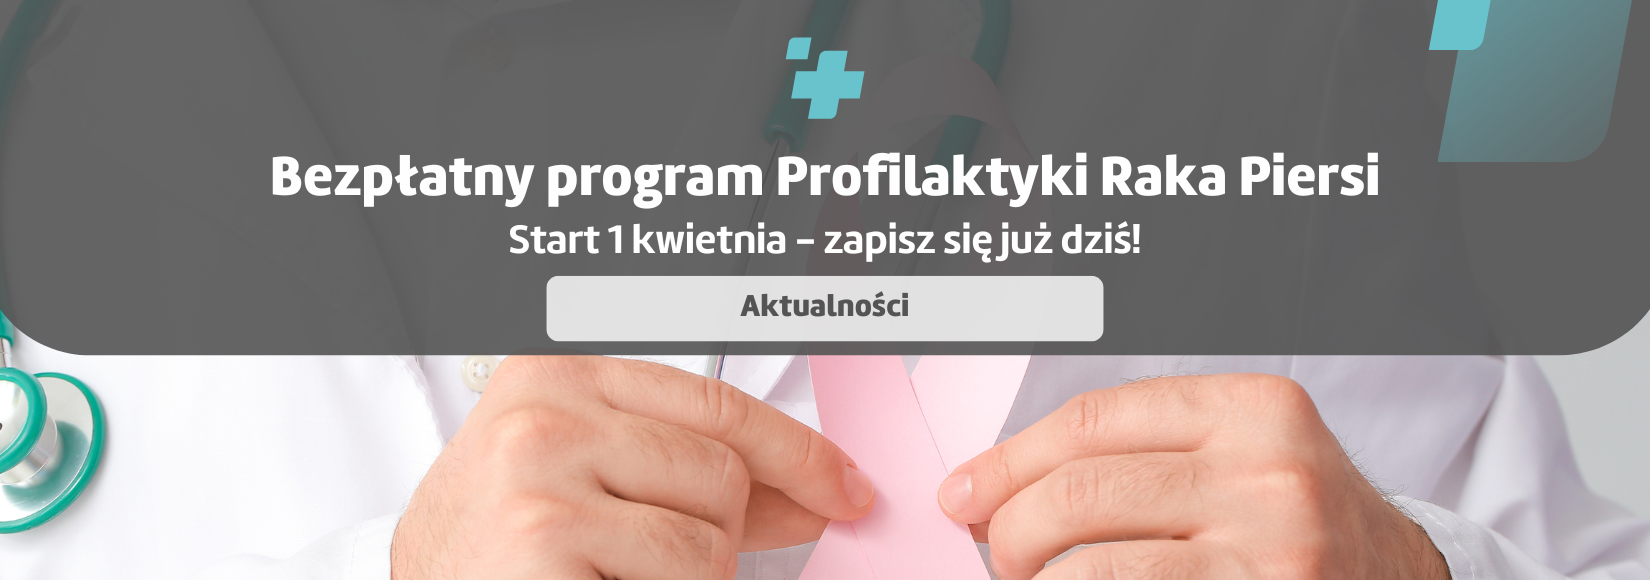 Bochnia - Bezpłatny program Profilaktyki Raka Piersi startuje 1 kwietnia - zapisz się już dziś!